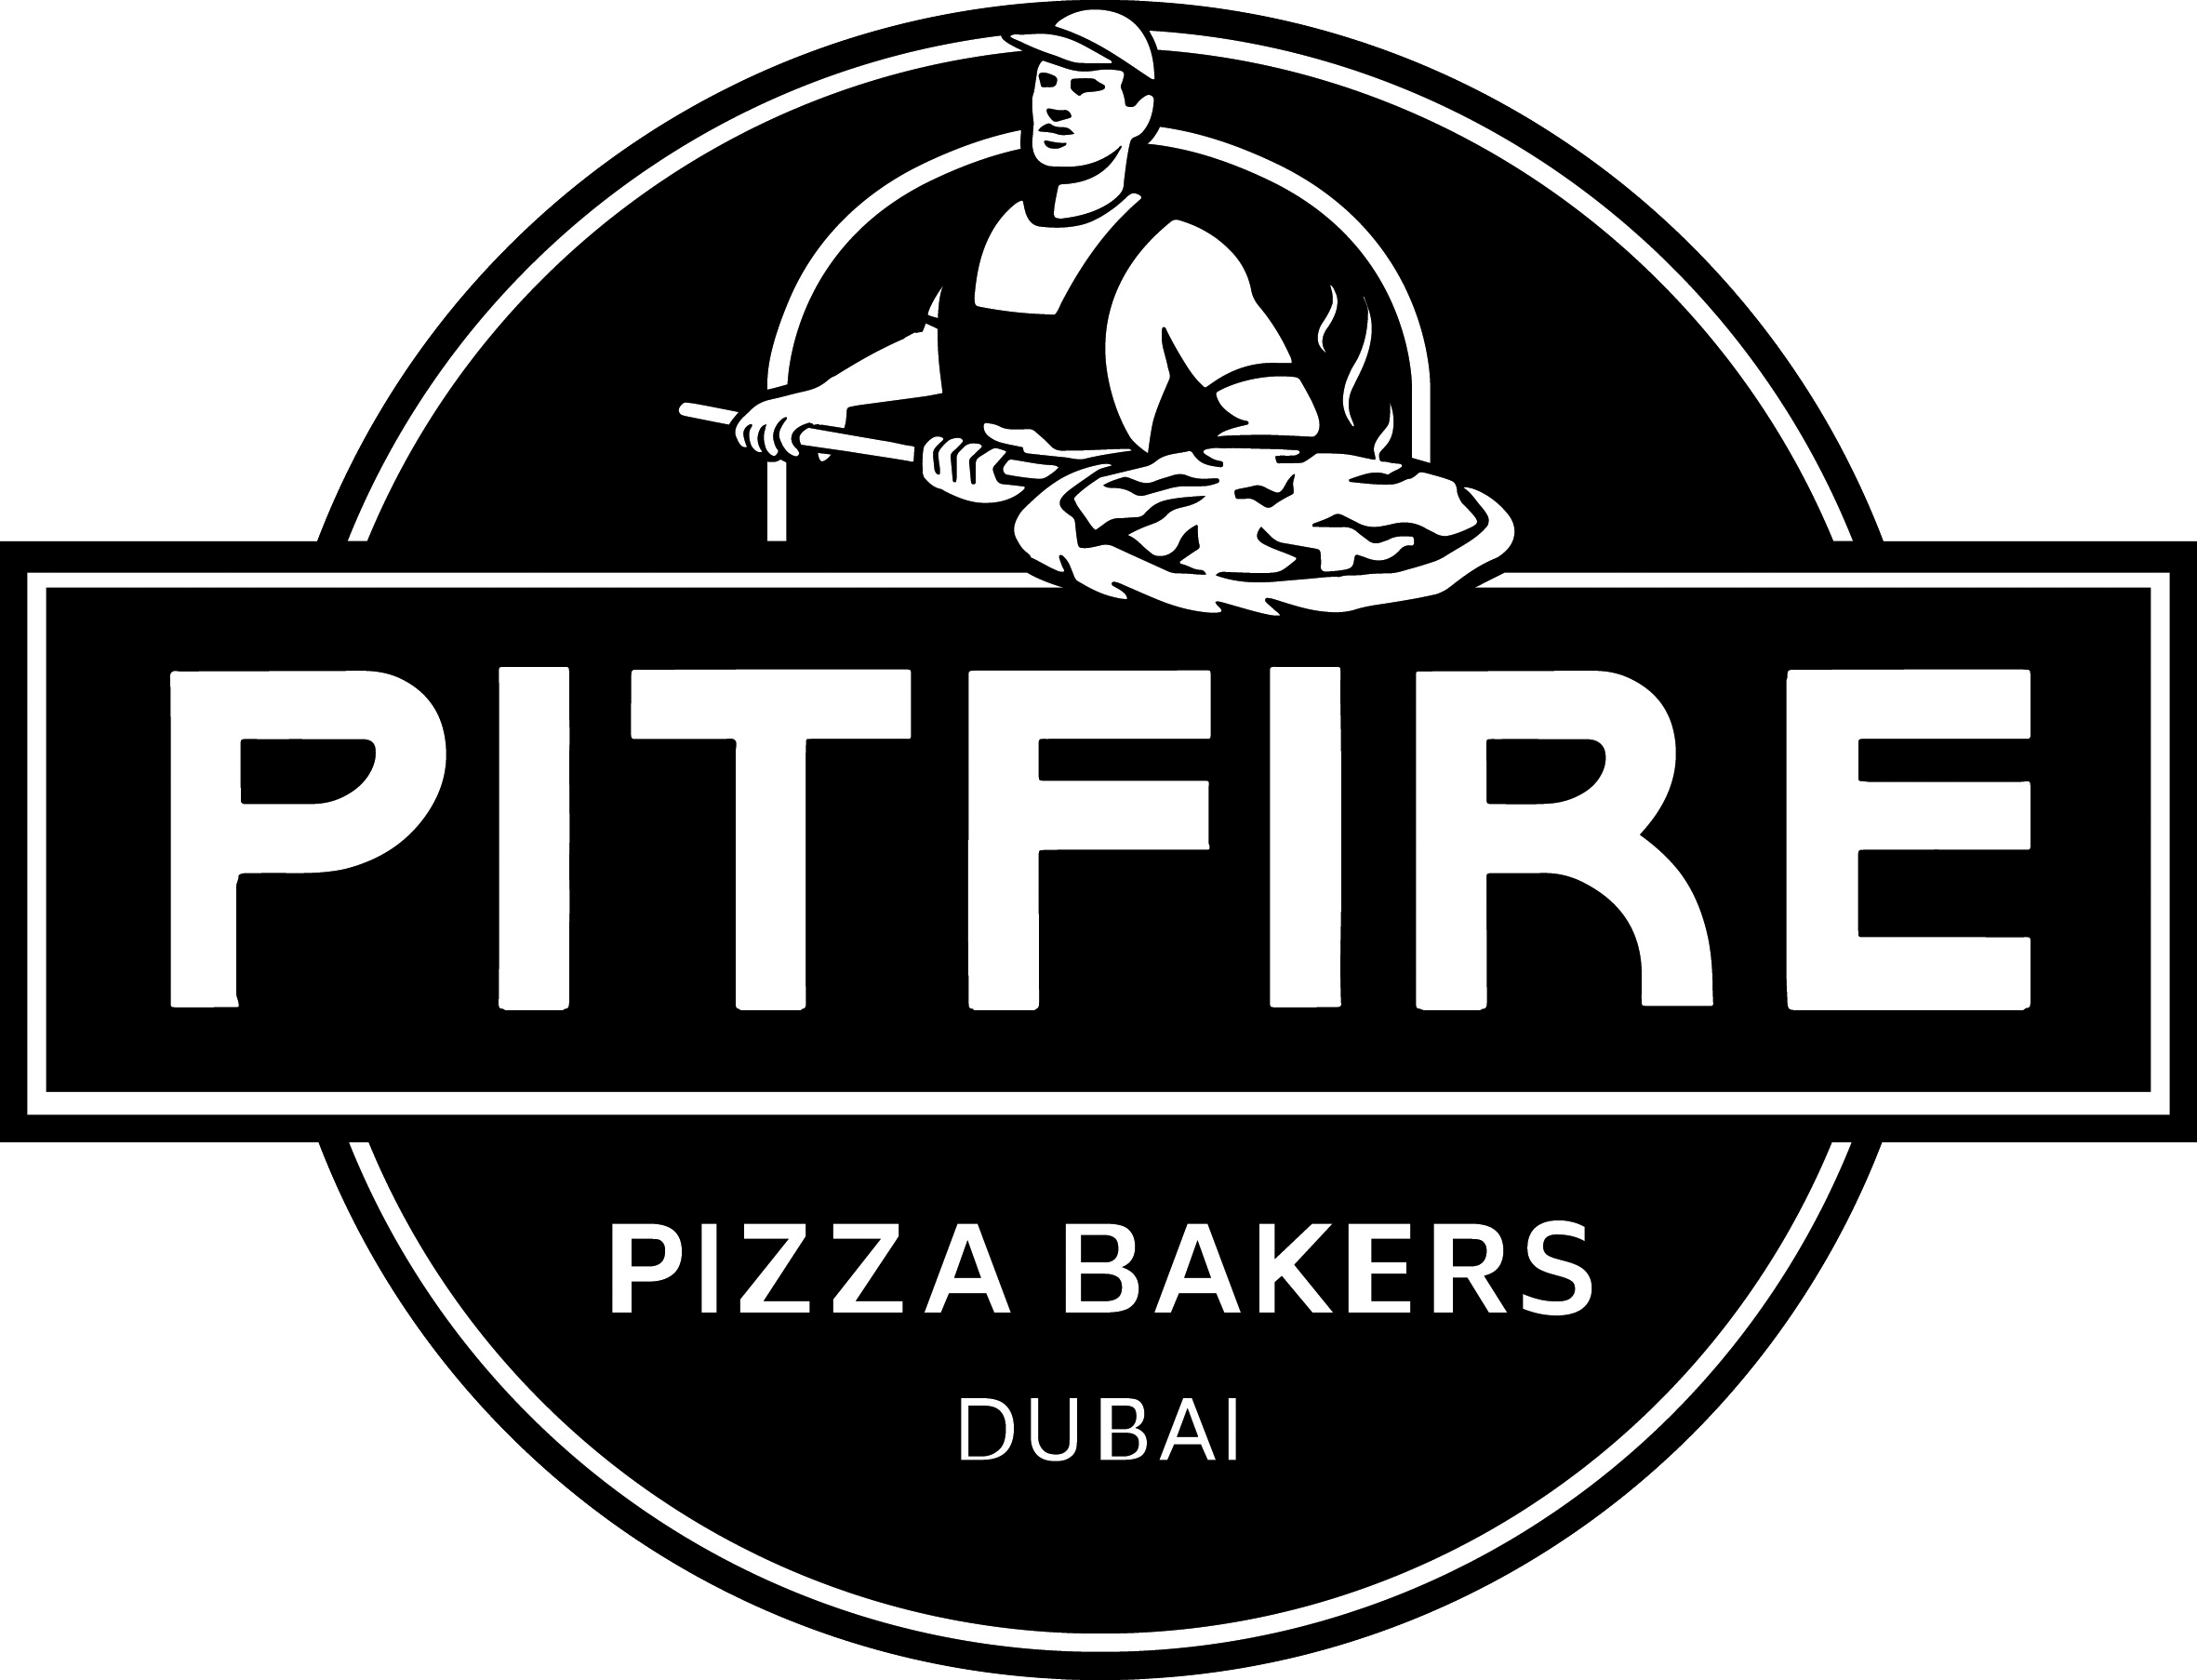 Spitfire Pizza Logo - Dubai's Favourite Pizza | Pitfire Pizza